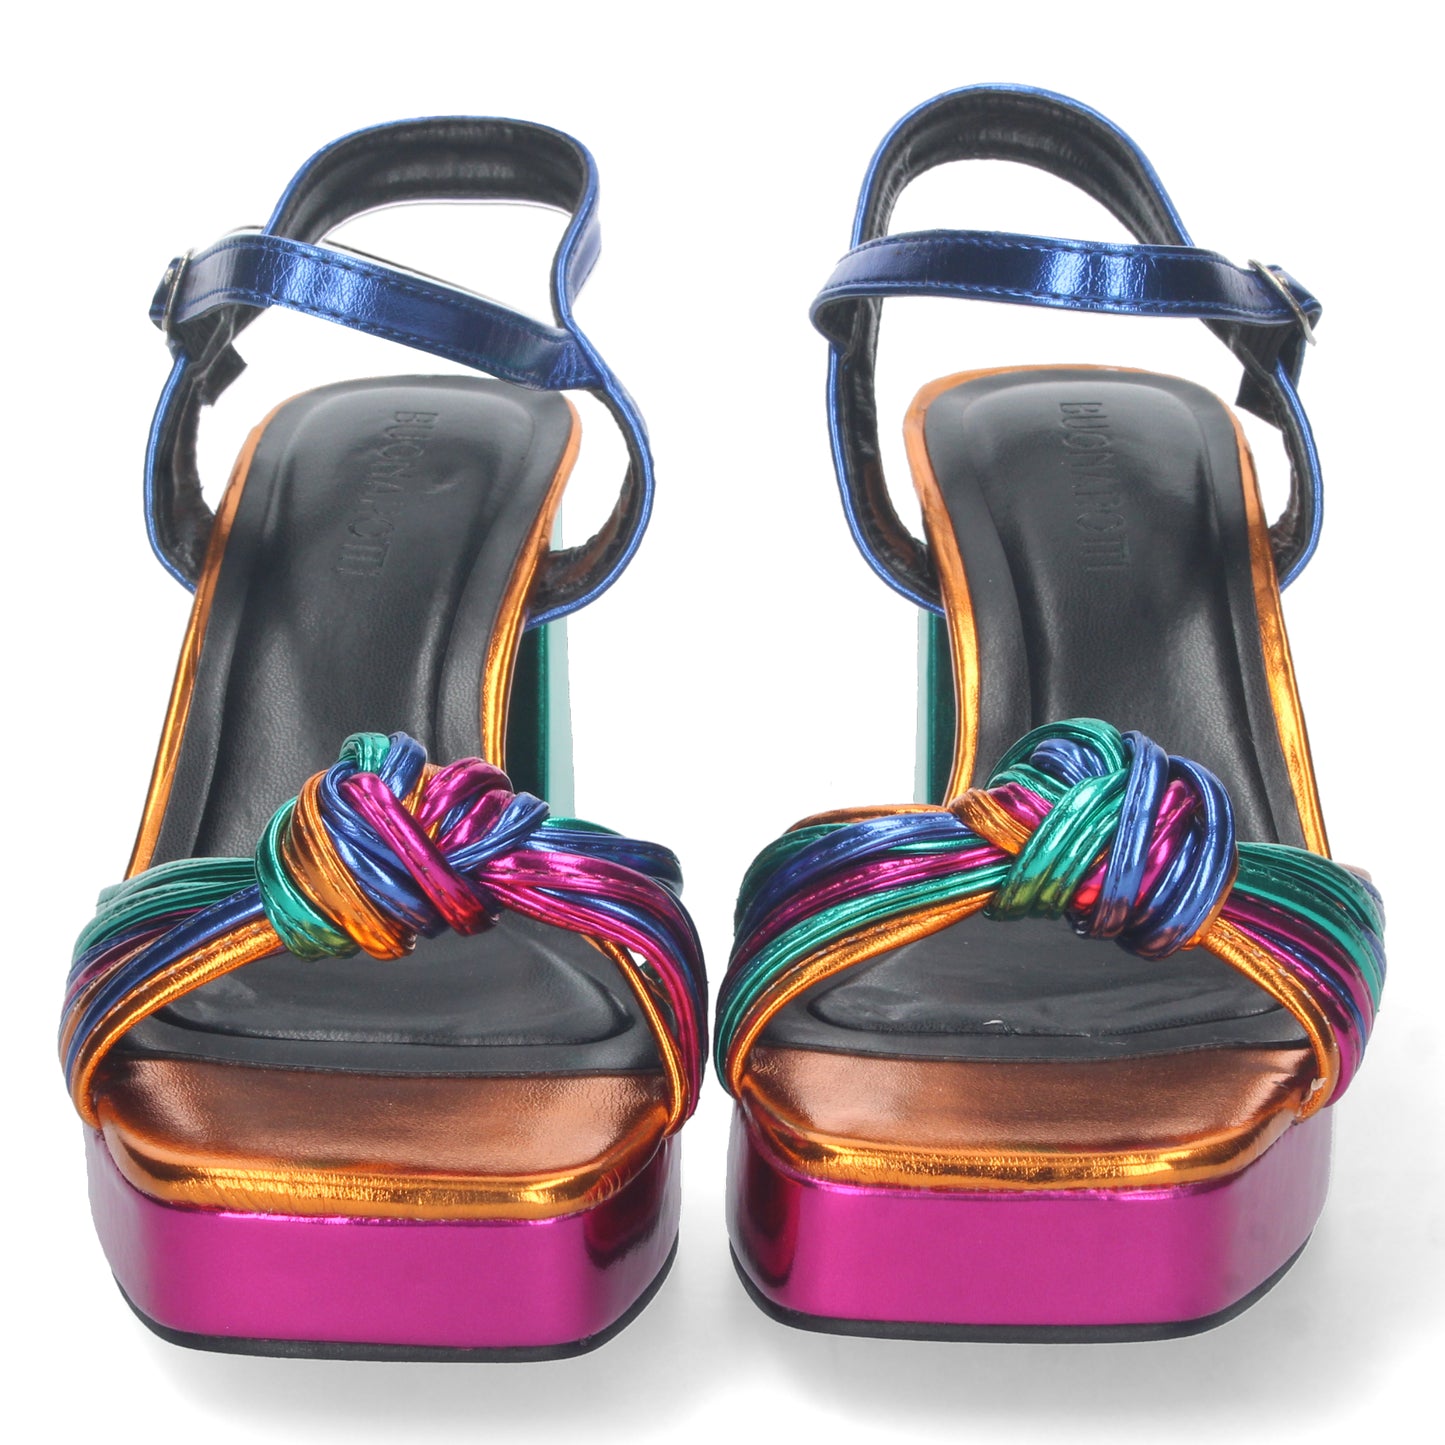 Sandalia tiras enredadas multicolor